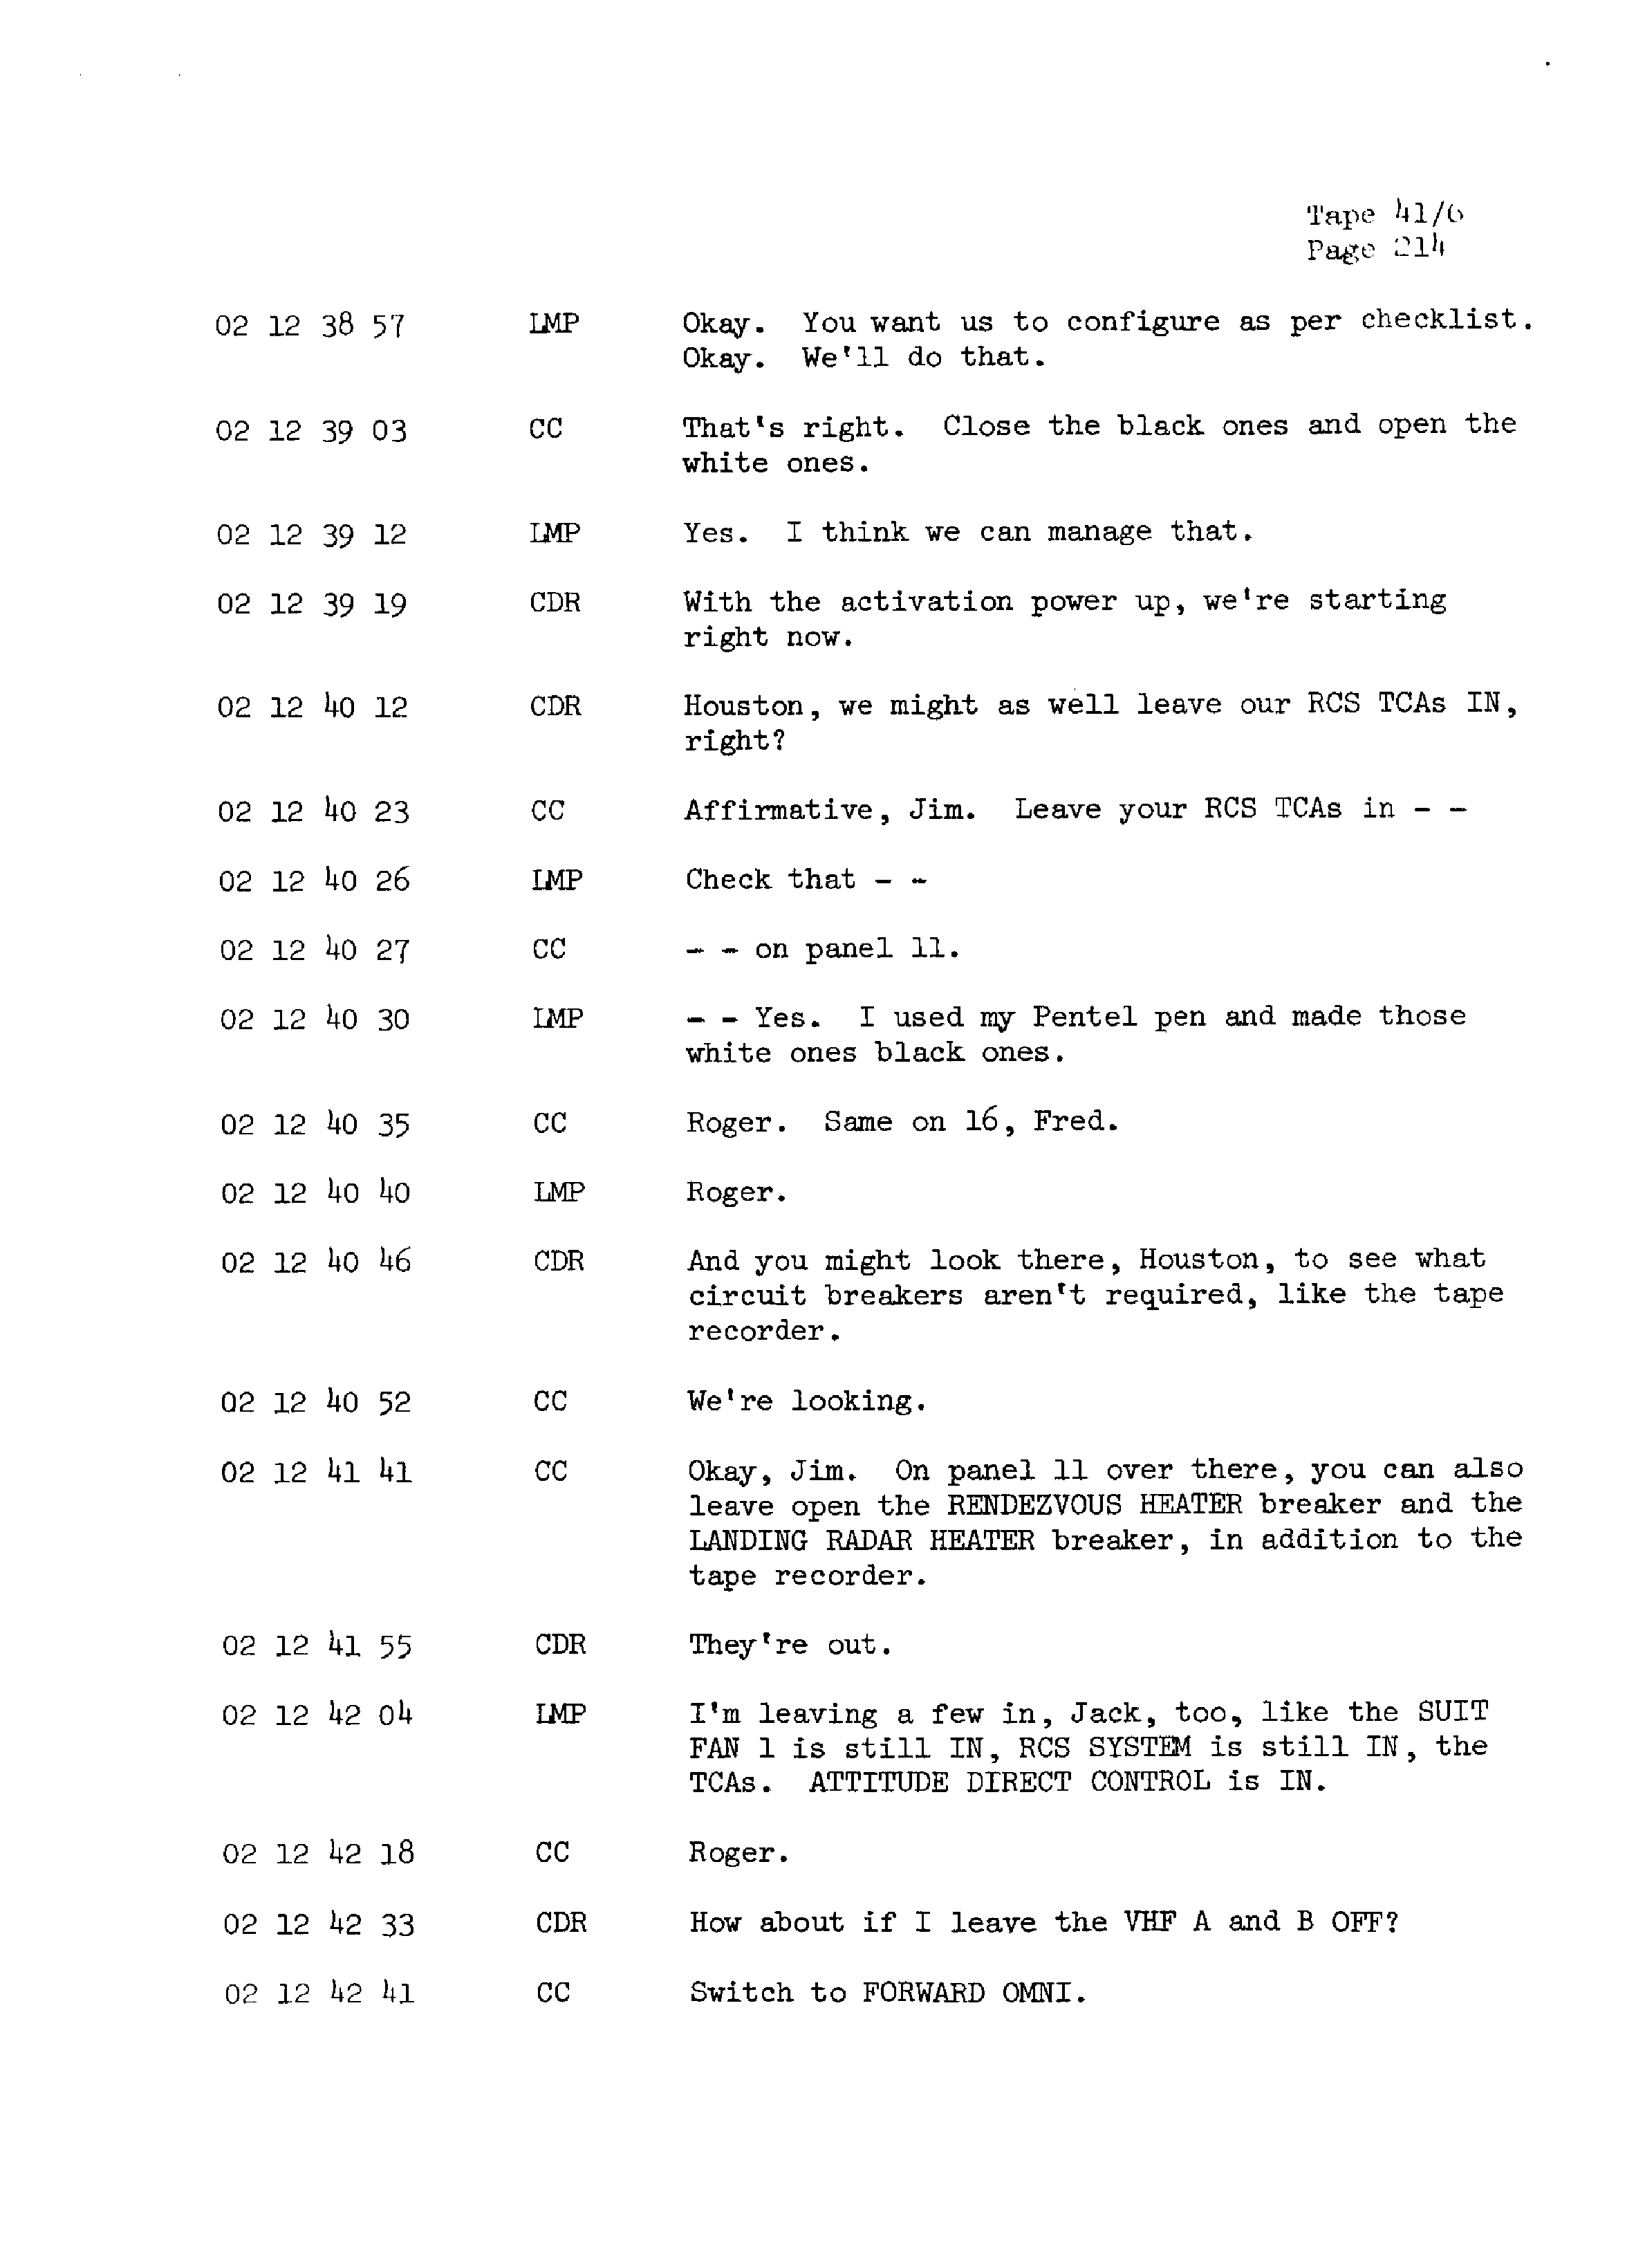 Page 221 of Apollo 13’s original transcript